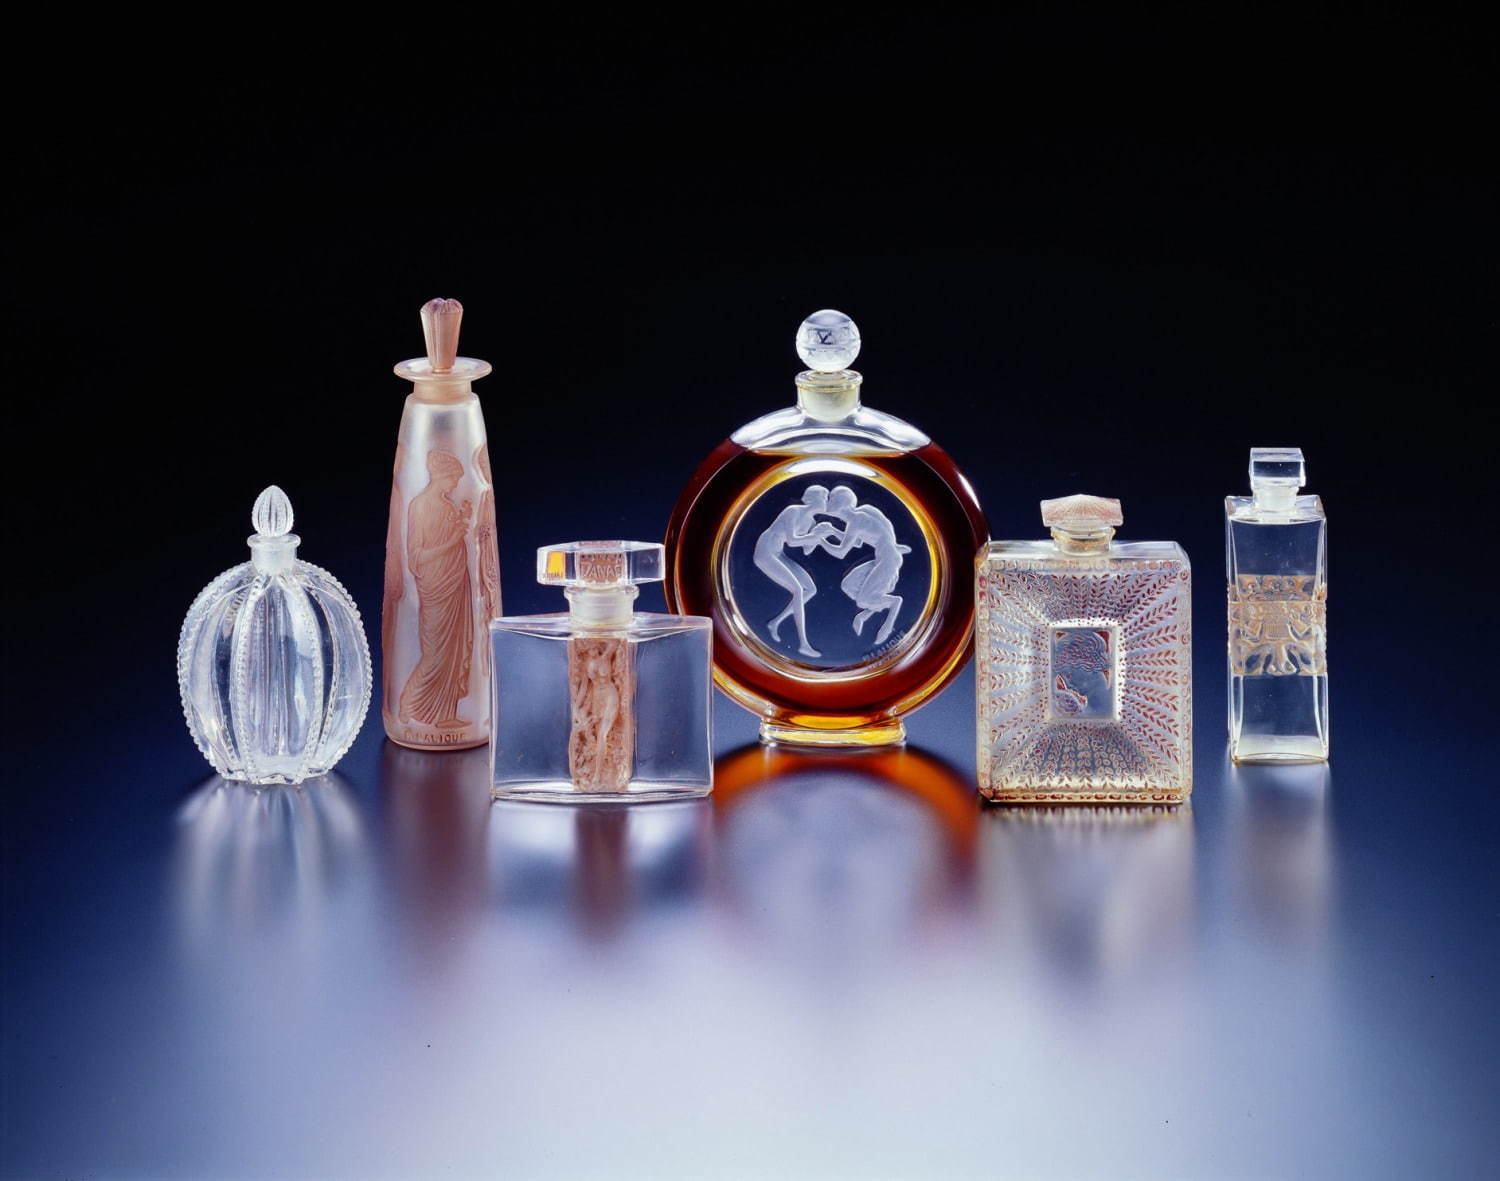 香水瓶《牧神のくちづけ》 モリナール社 1928年(左から3番目)ほか香水瓶各種 北澤美術館蔵